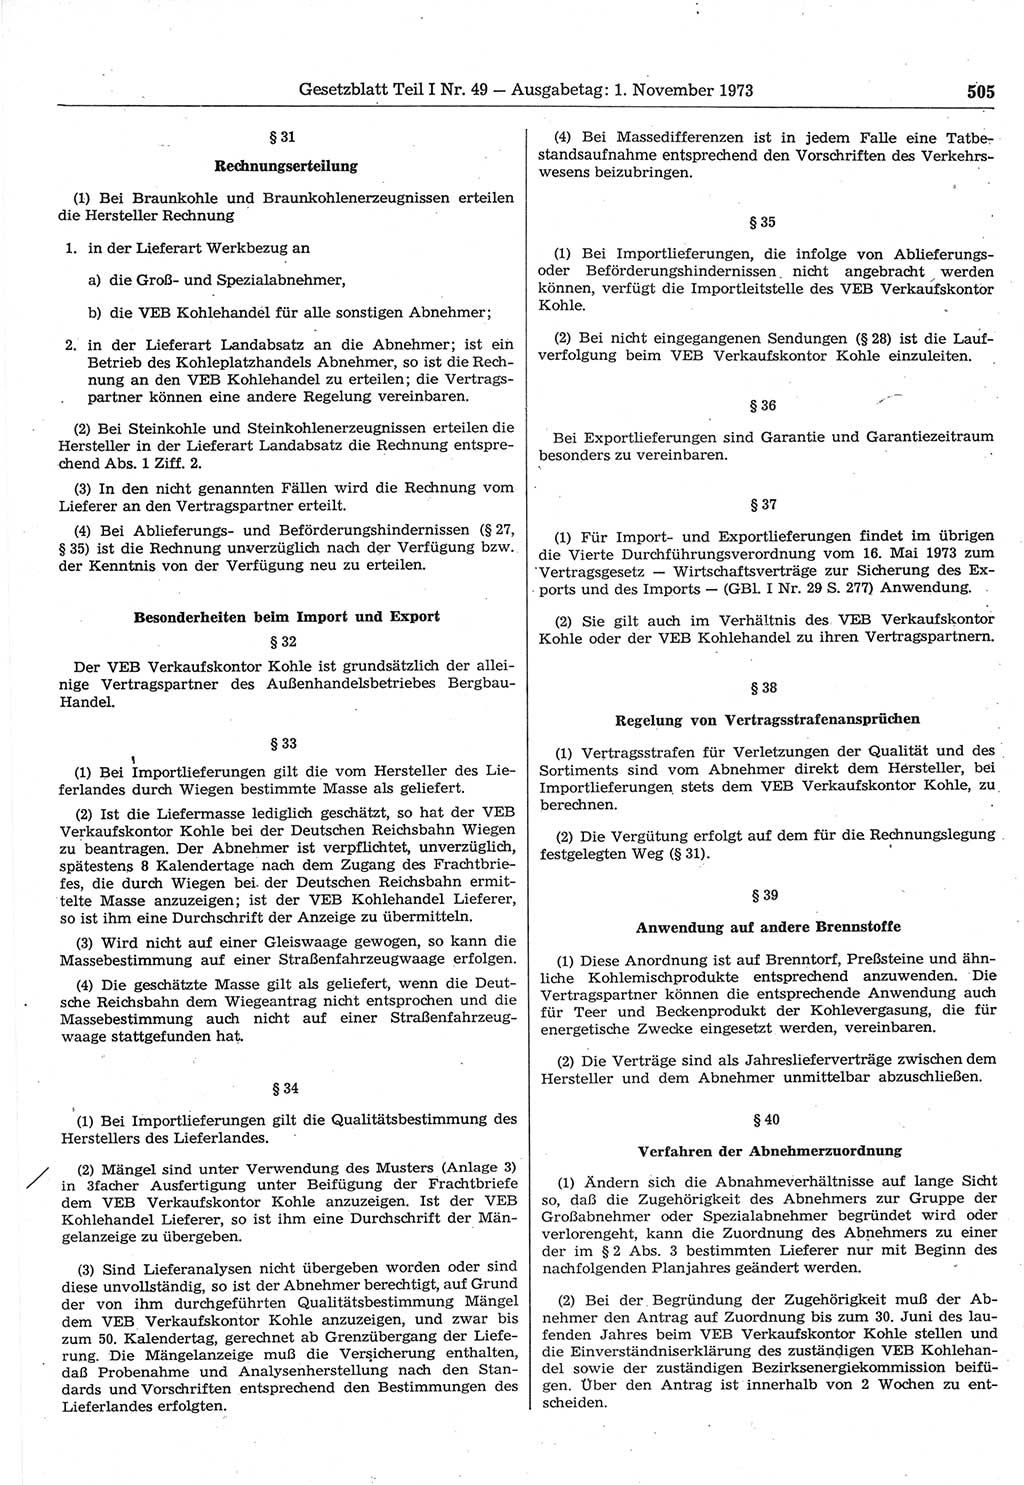 Gesetzblatt (GBl.) der Deutschen Demokratischen Republik (DDR) Teil Ⅰ 1973, Seite 505 (GBl. DDR Ⅰ 1973, S. 505)